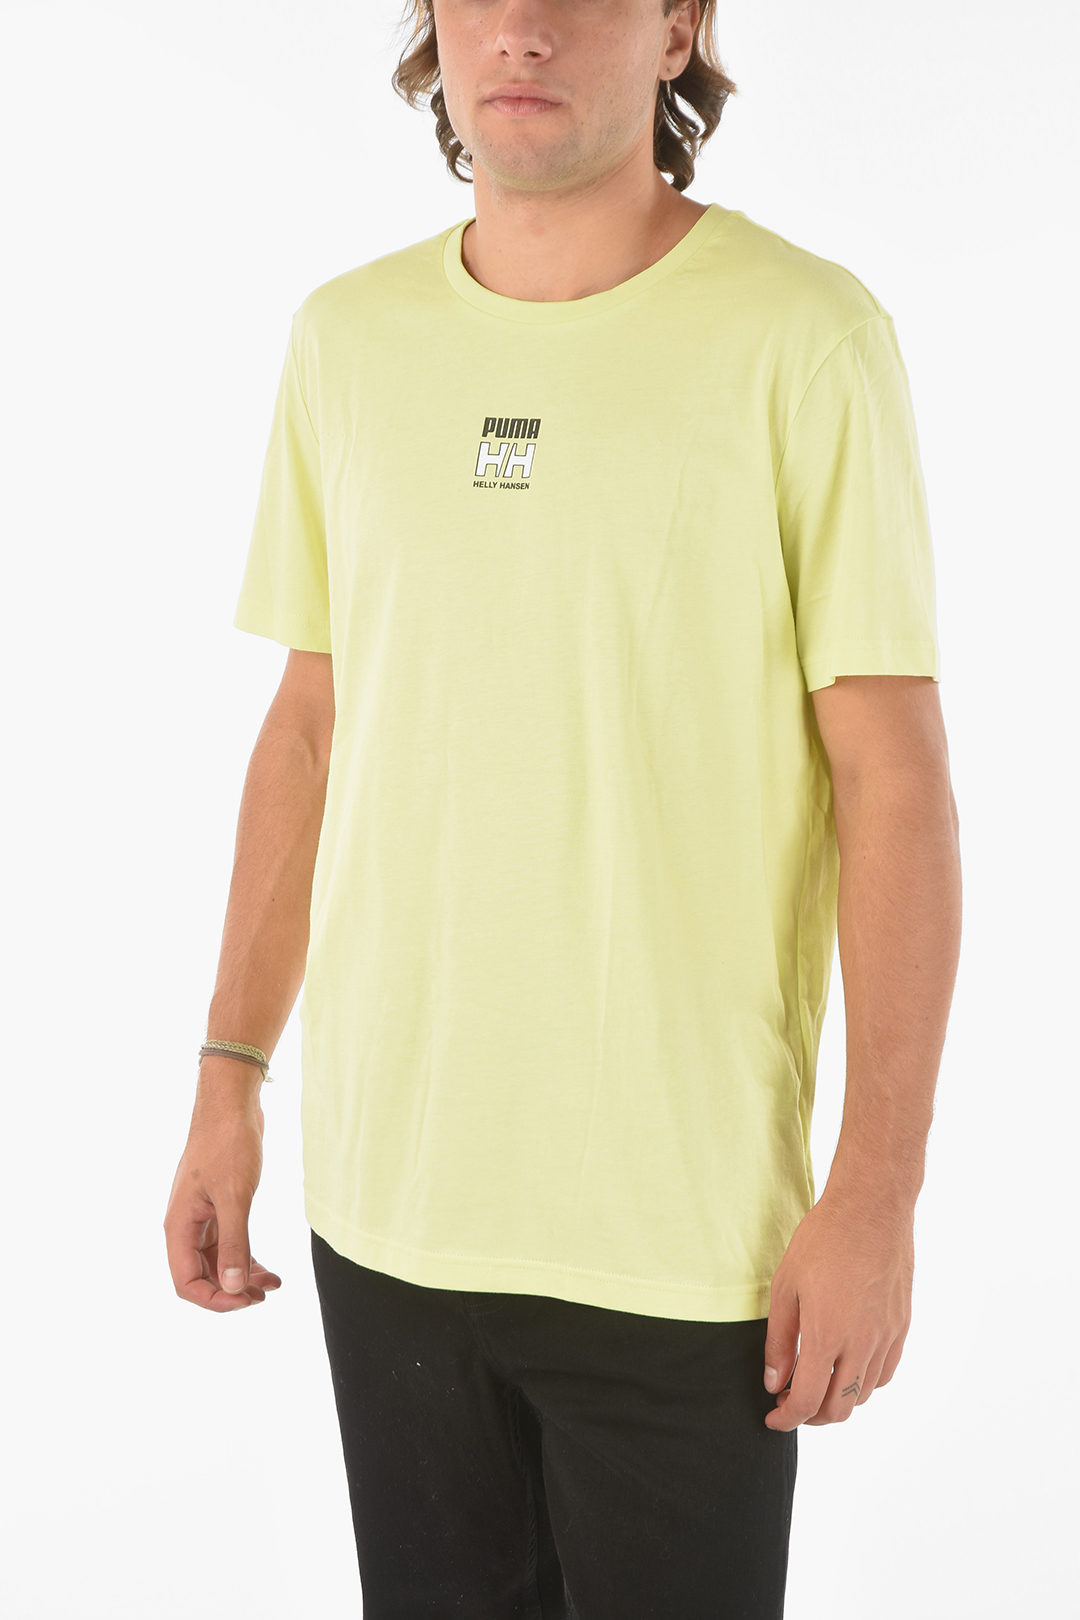 zeewier bijvoorbeeld Verlaten Puma HELLY HANSEN Fluo Crew-neck T-shirt men - Glamood Outlet